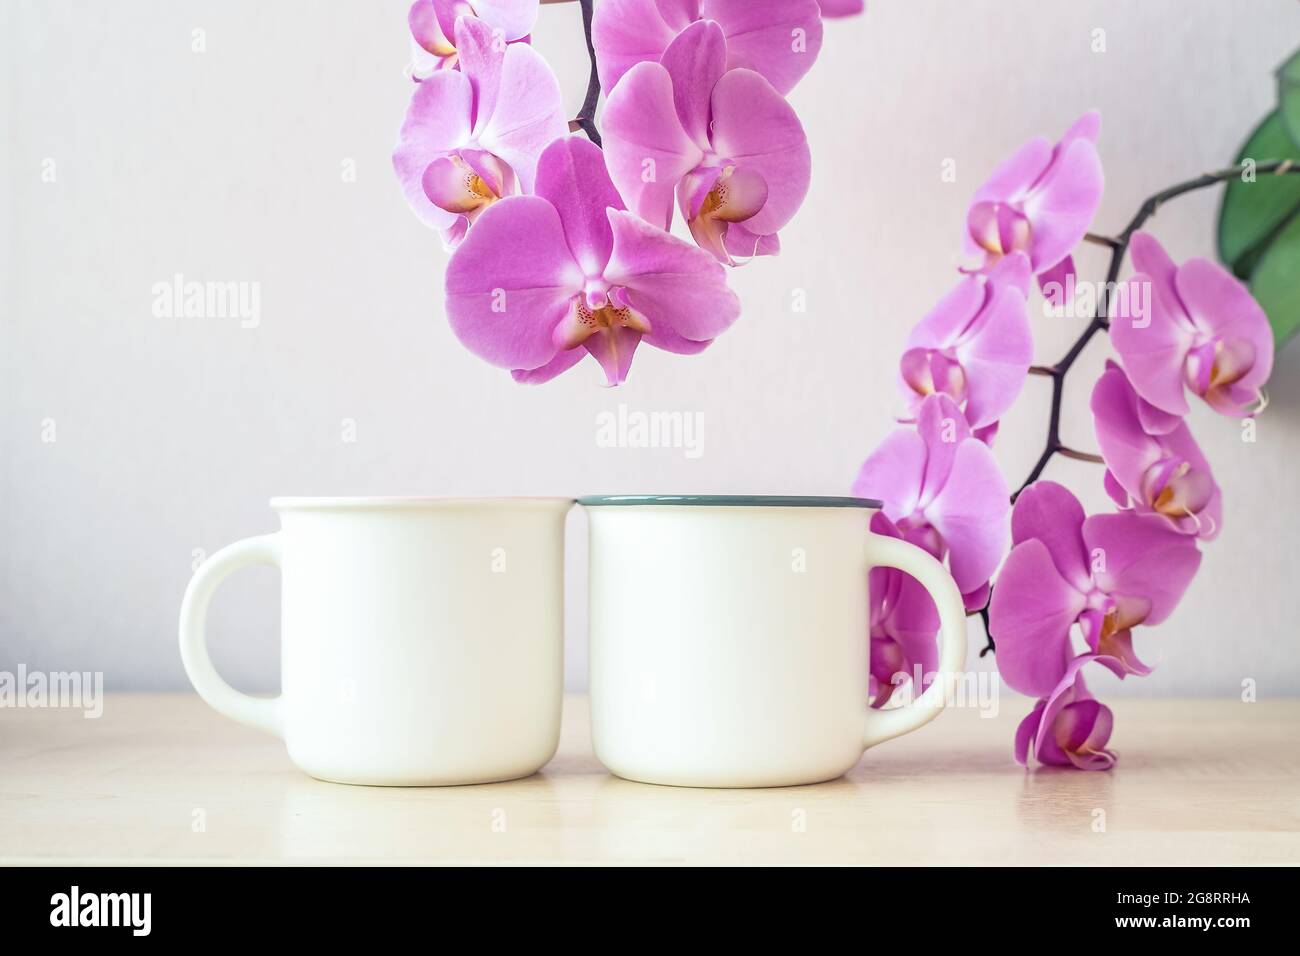 Maquette de deux tasses blanches sur table avec décor de fleurs d'orchidées Banque D'Images